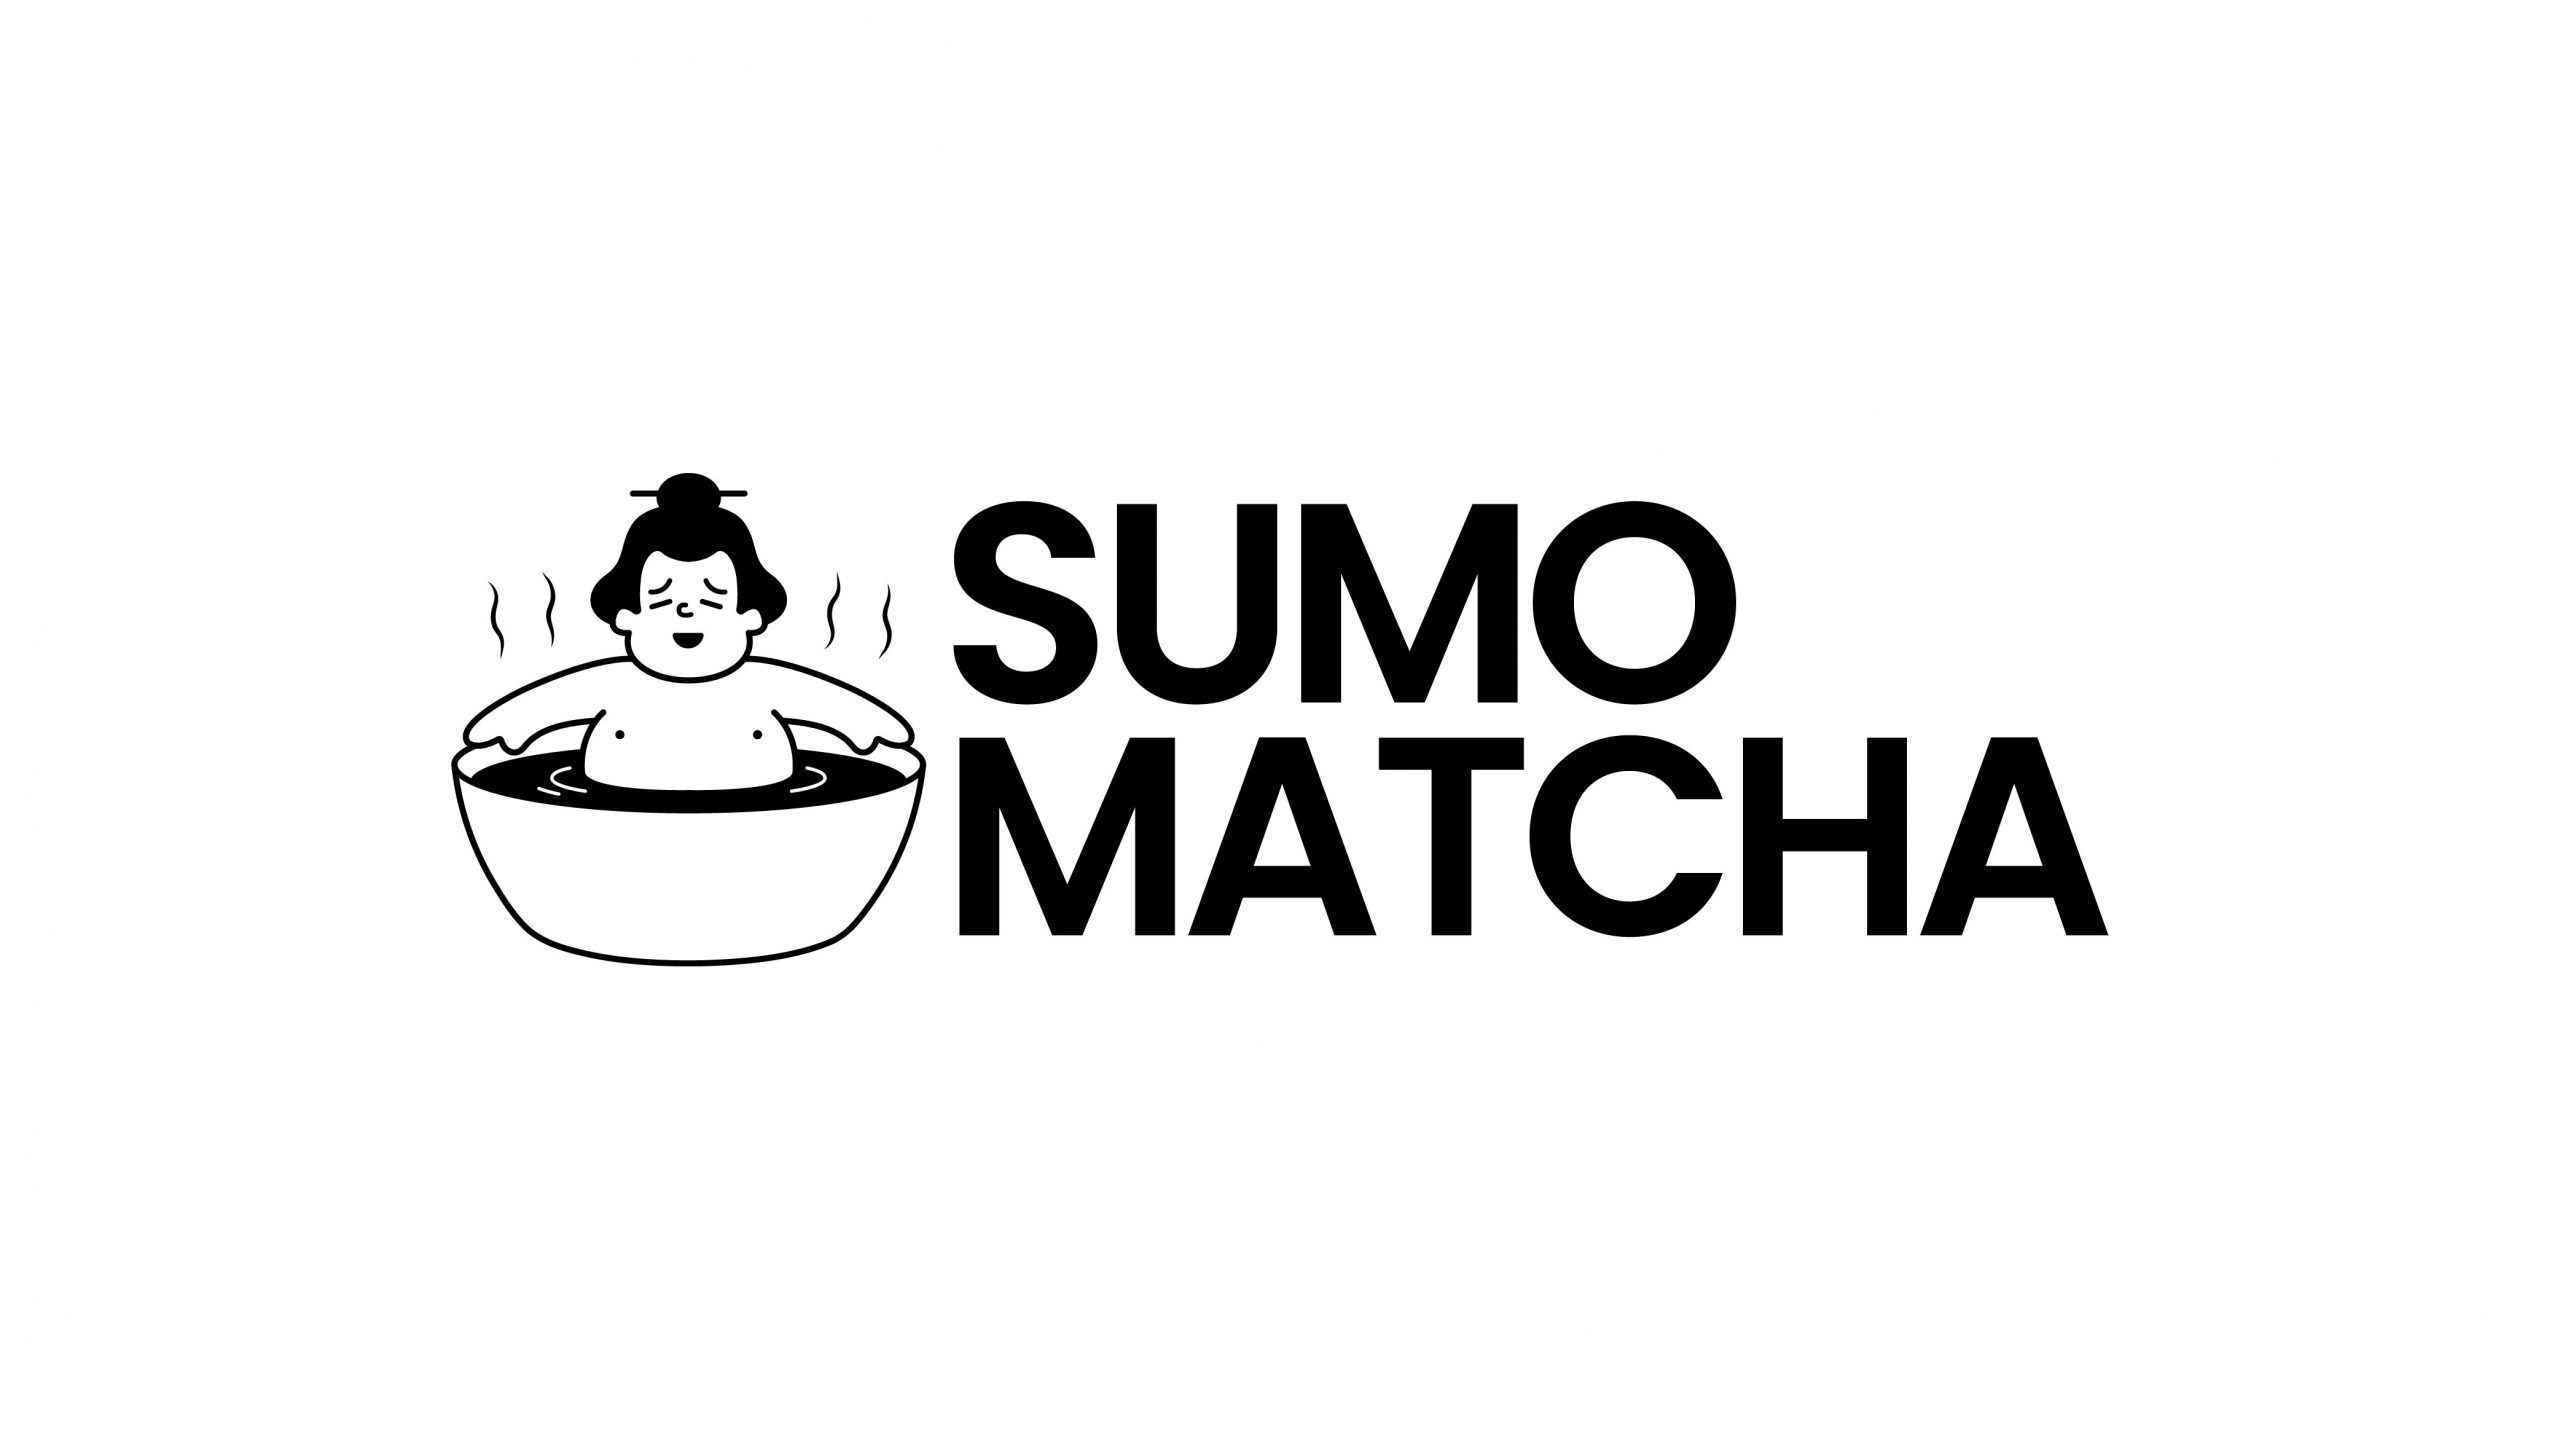 Sumo matcha logotyp liggandes